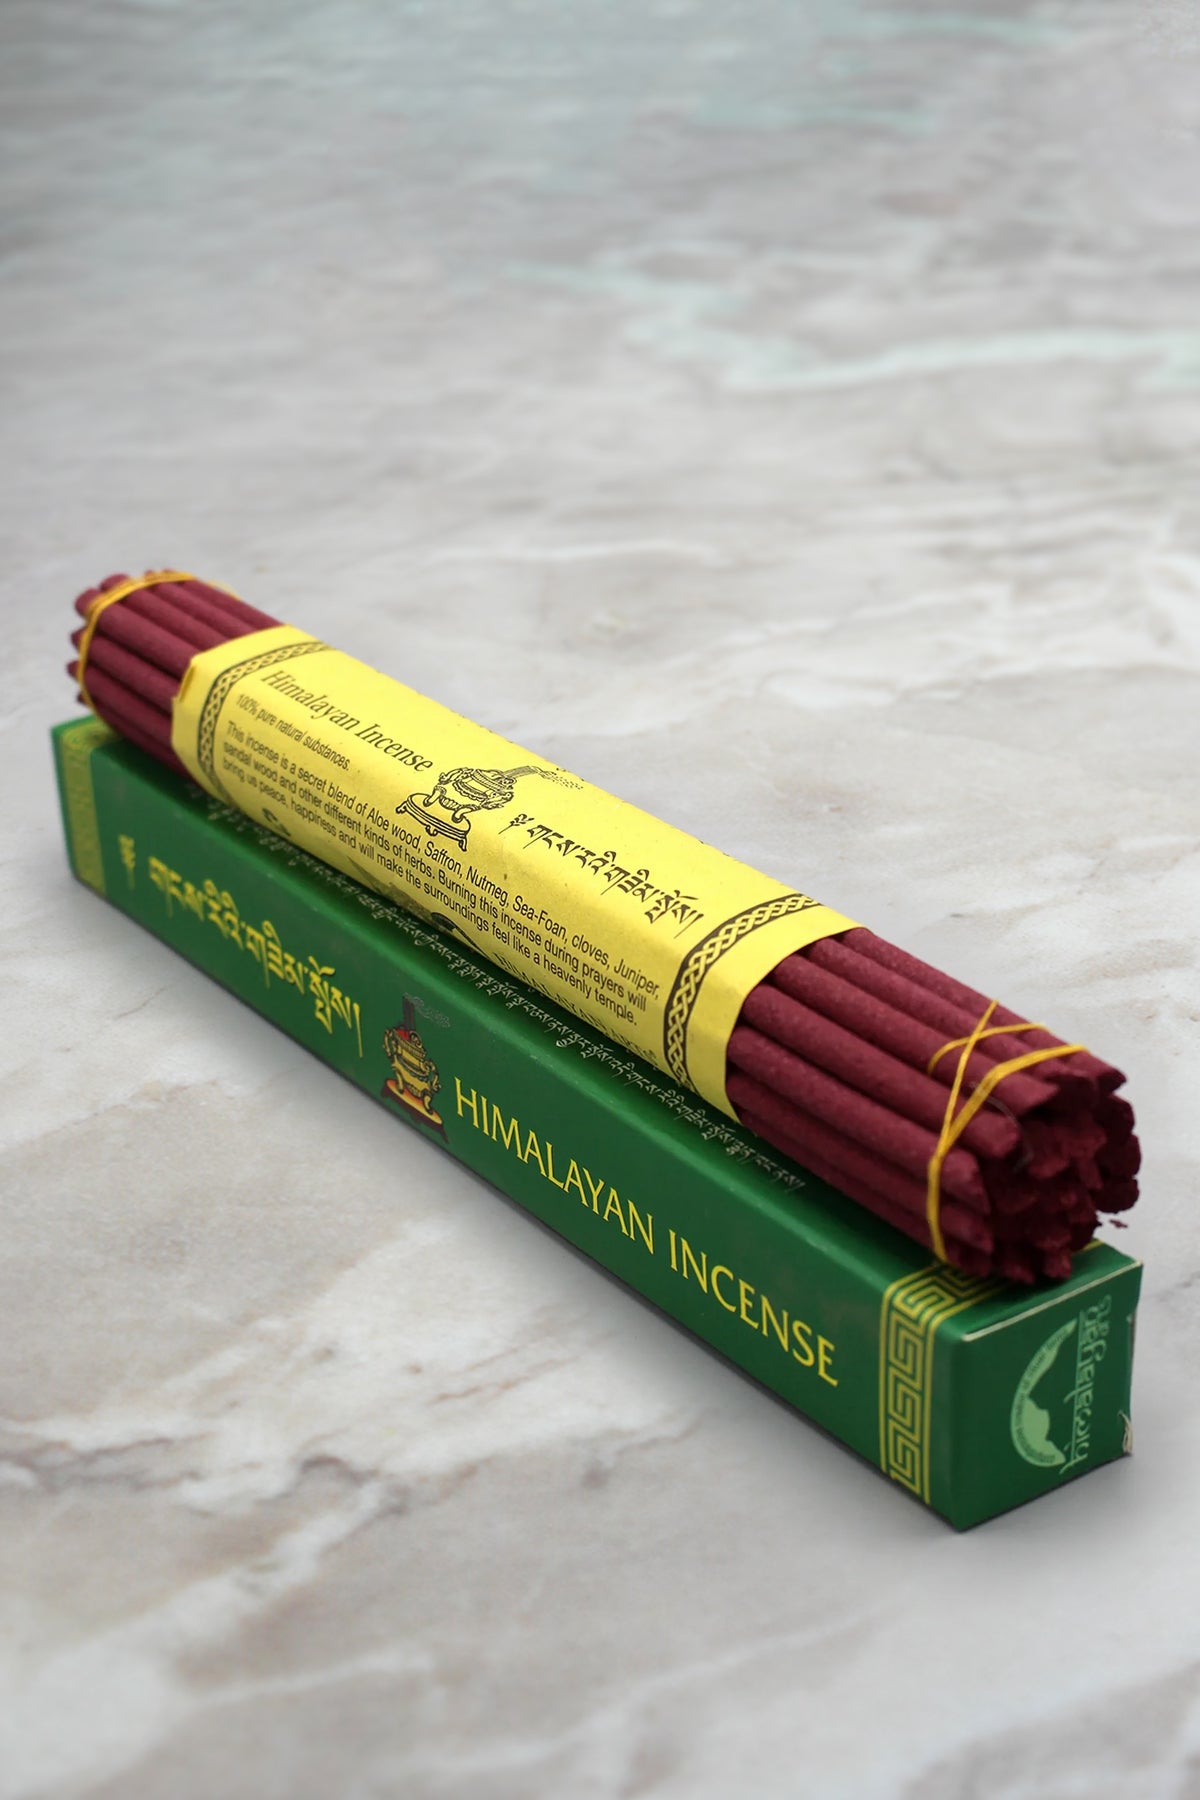 Pure and Natural Green Himalayan Incense